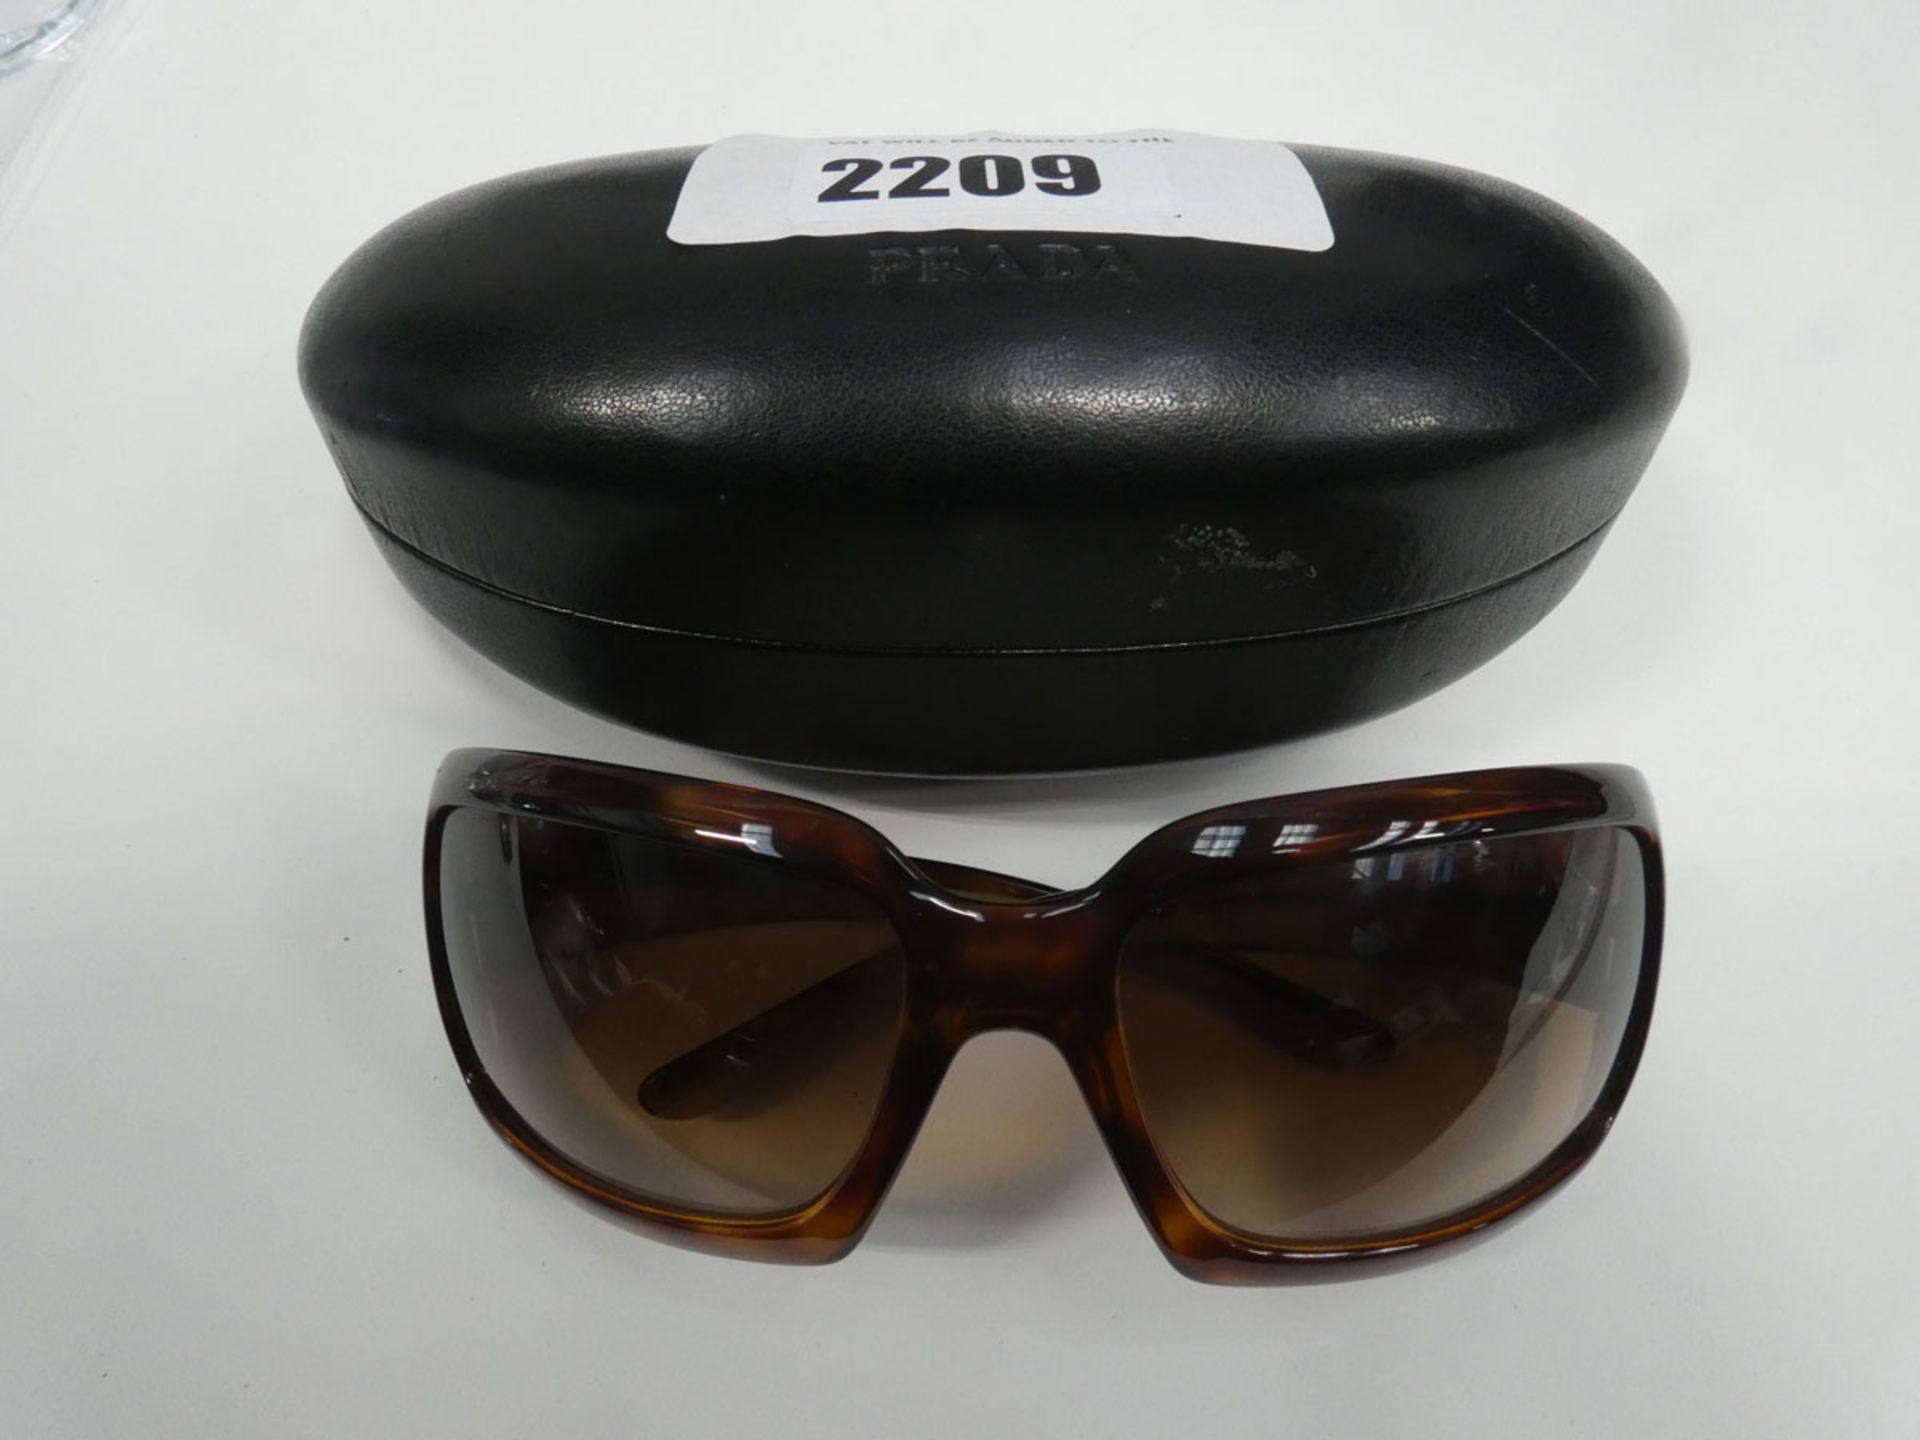 Pair of Prada SPR01H ladies sunglasses in case